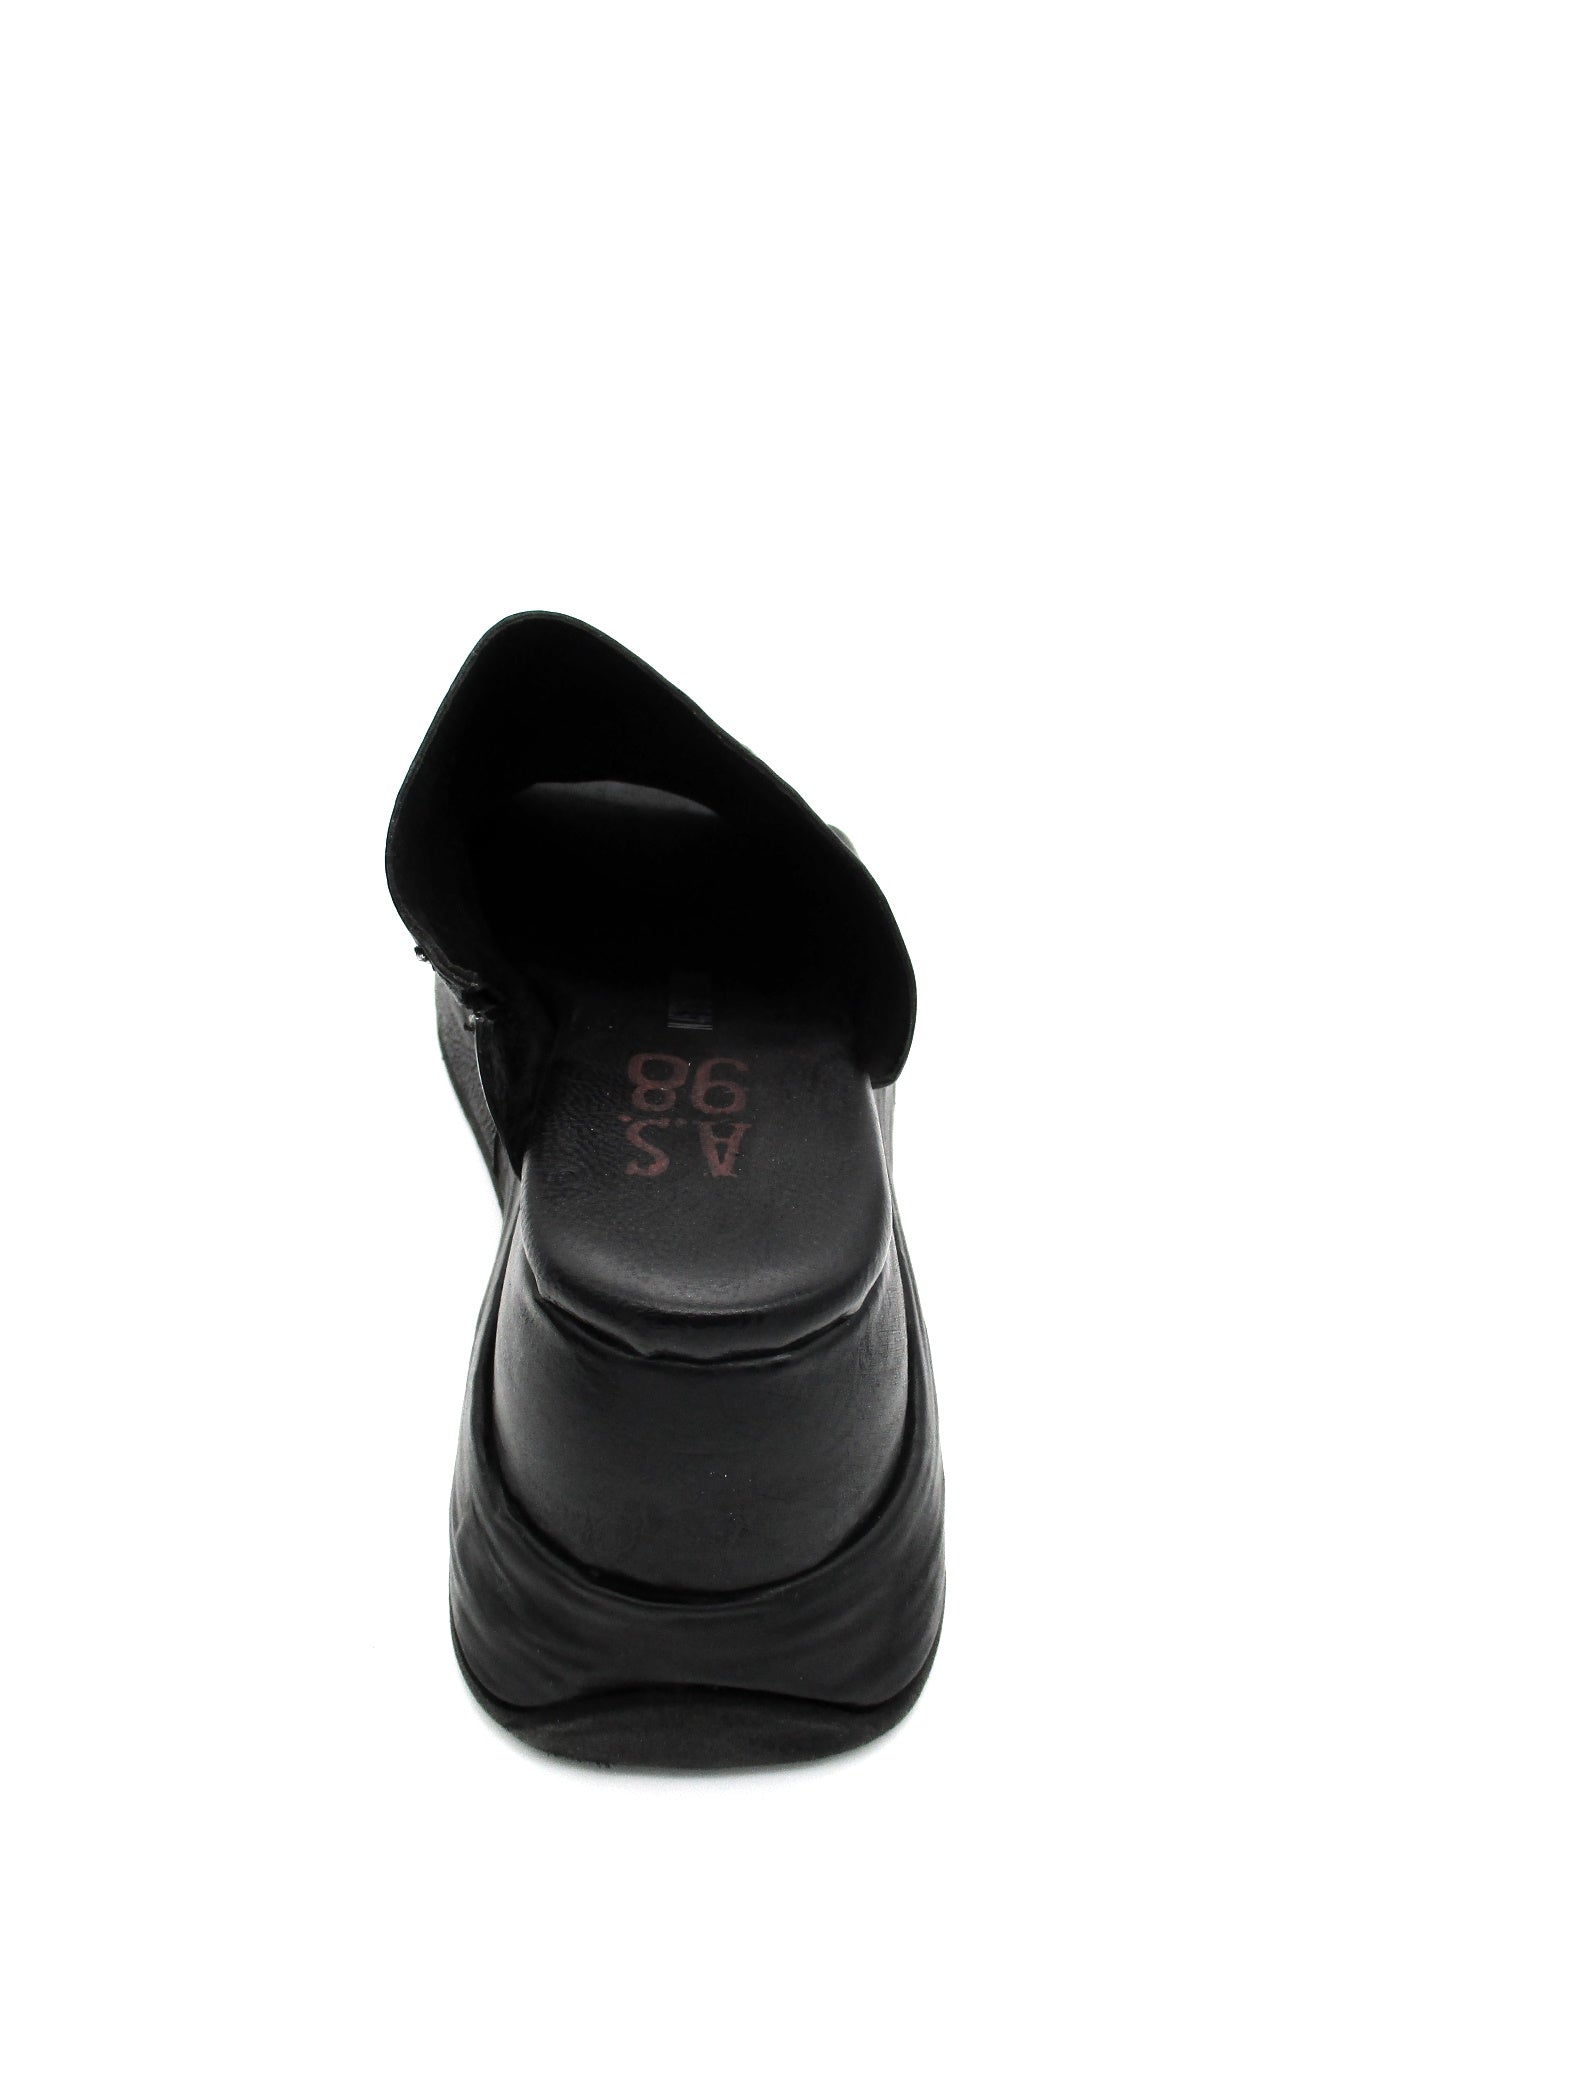 Sandalo in pelle zeppa donna As98 Reale Black - B27003 -